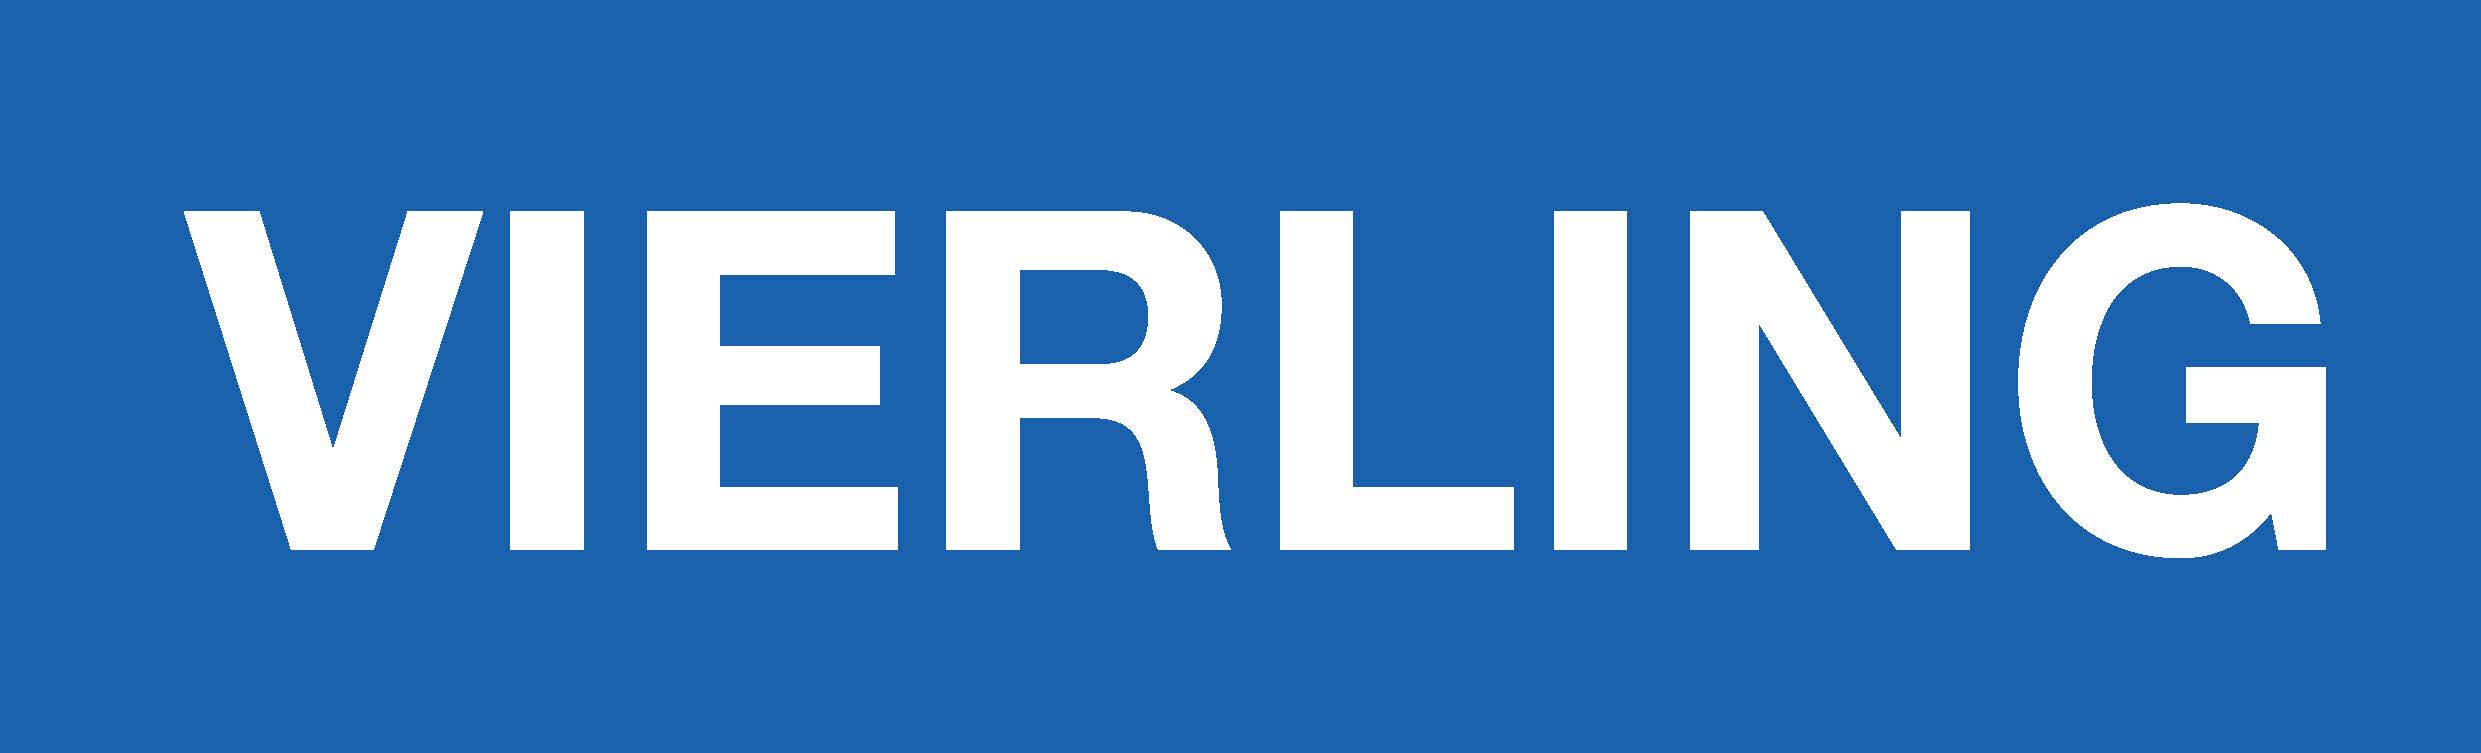 VIERLING_Logo.jpg